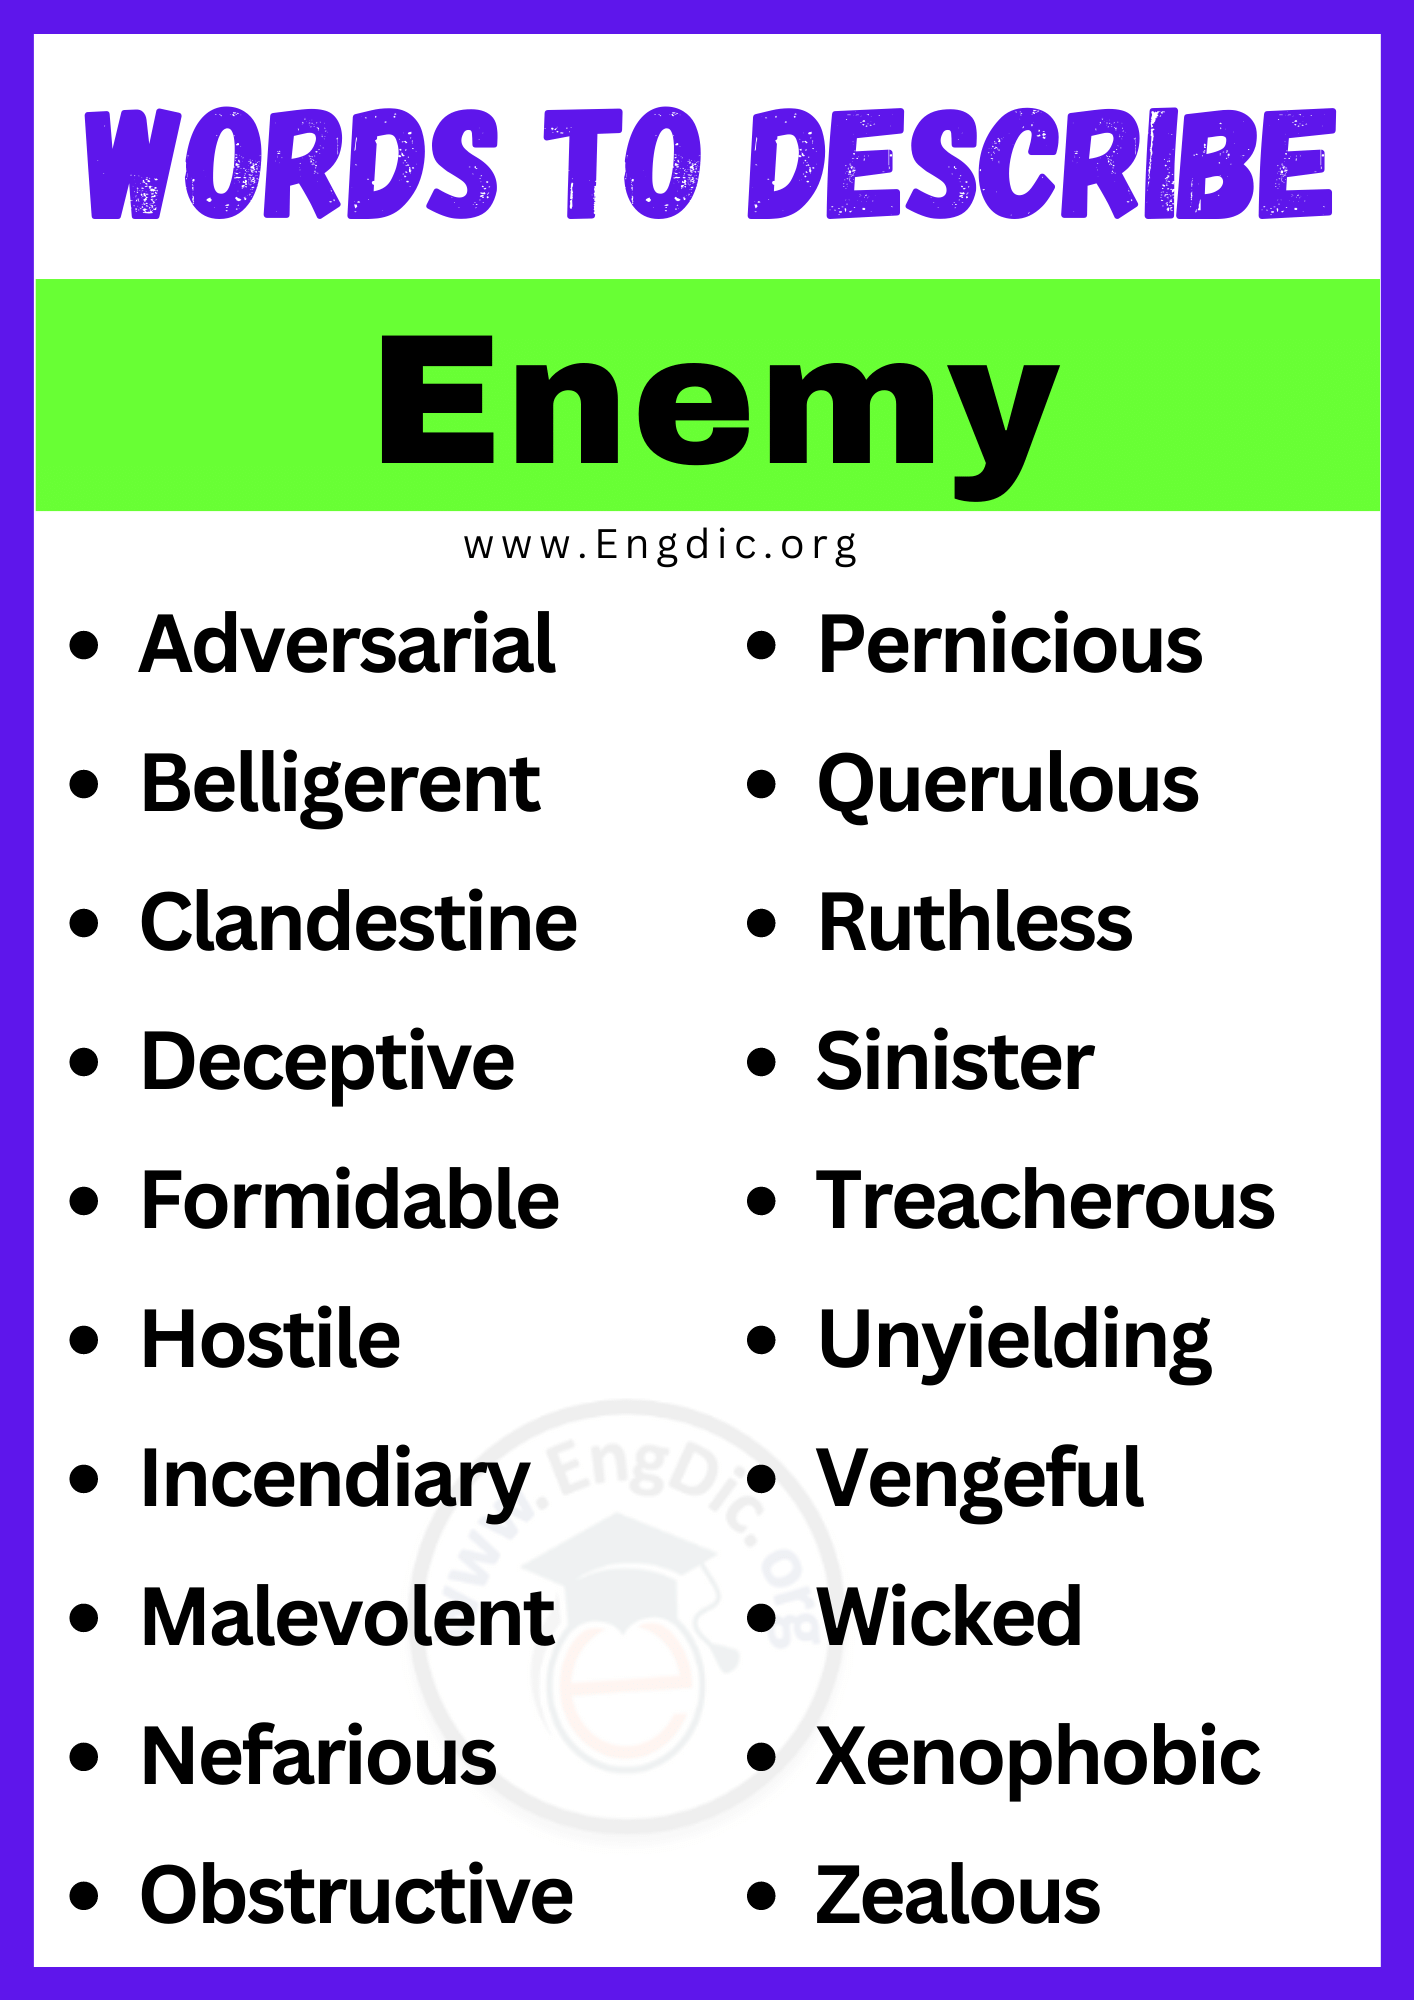 Words to Describe Enemy